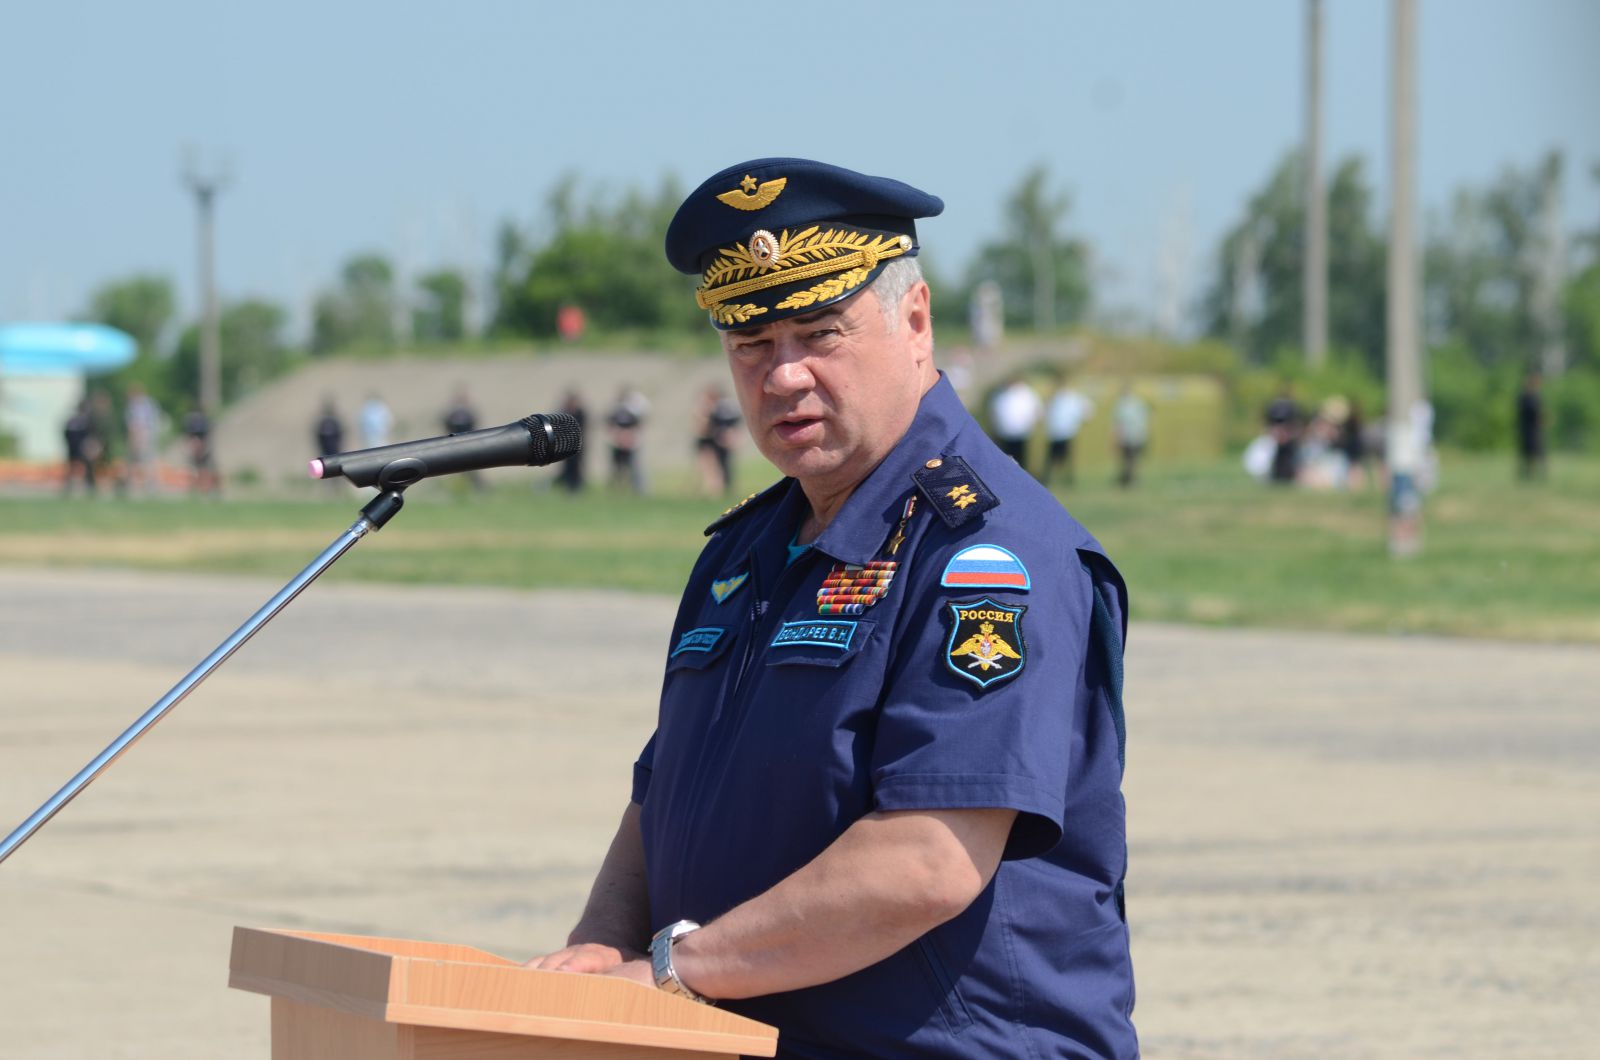 Генерал Бондарјев: Кичма међународног разбојништва ће бити сломљена